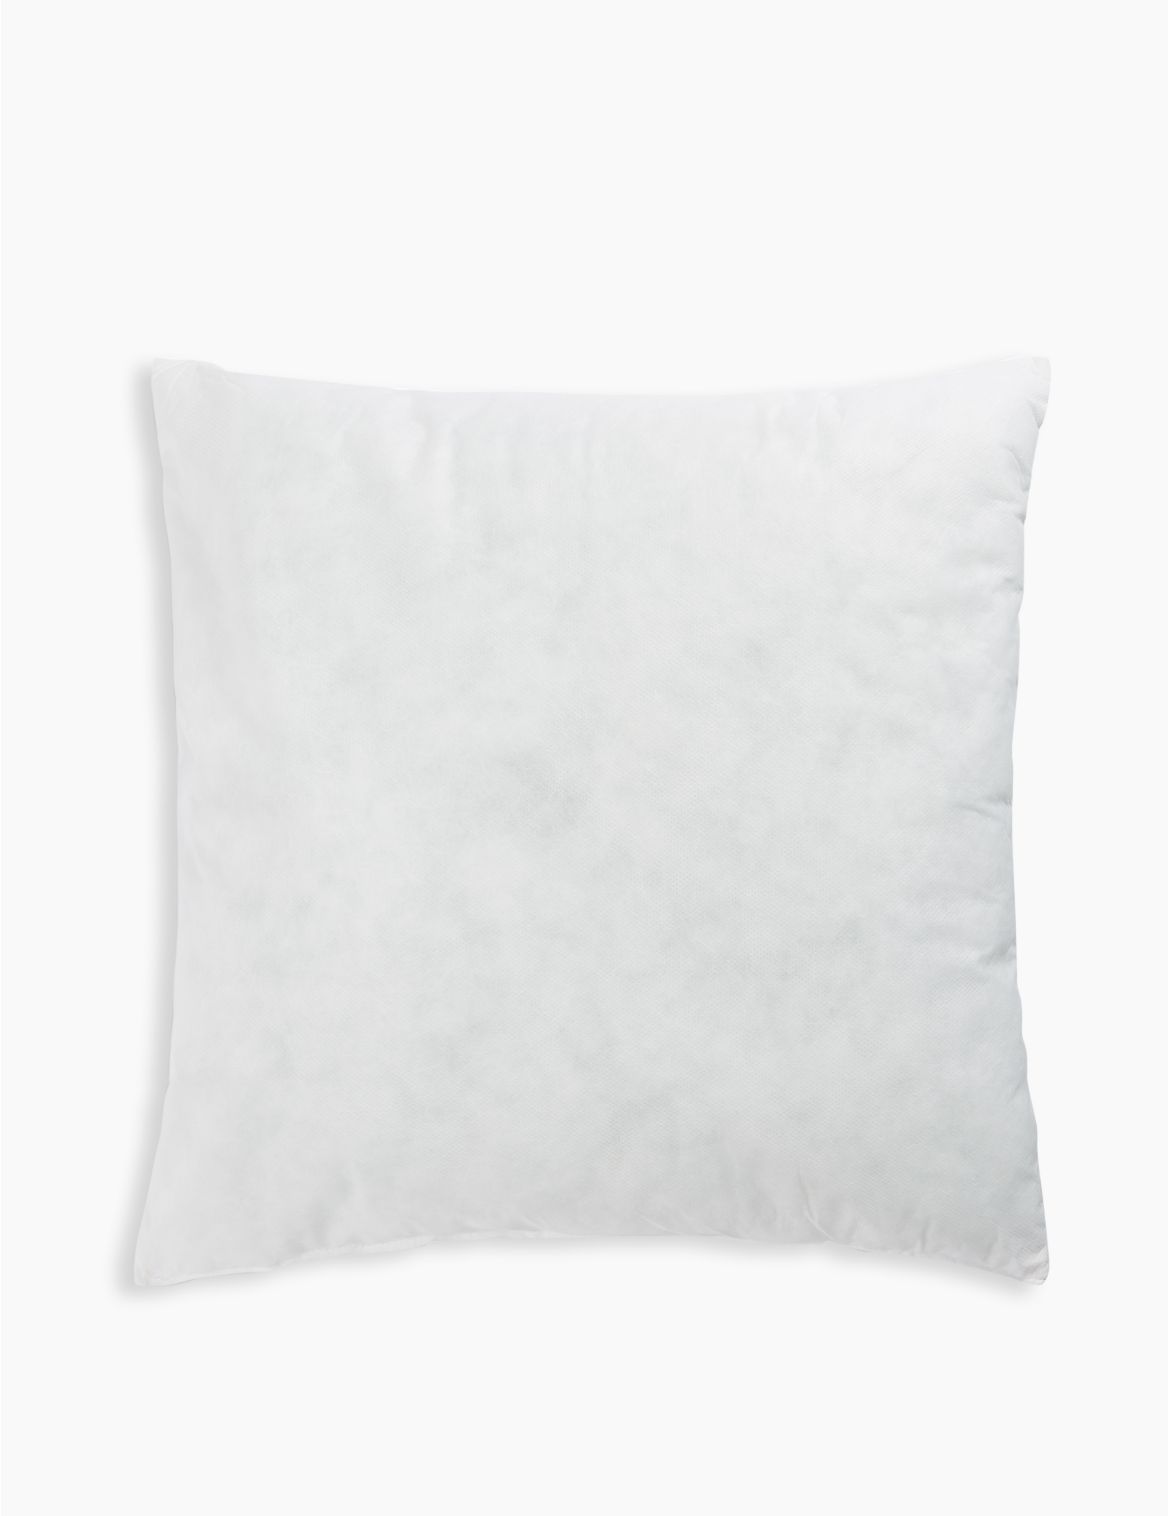 Cushion Pad white